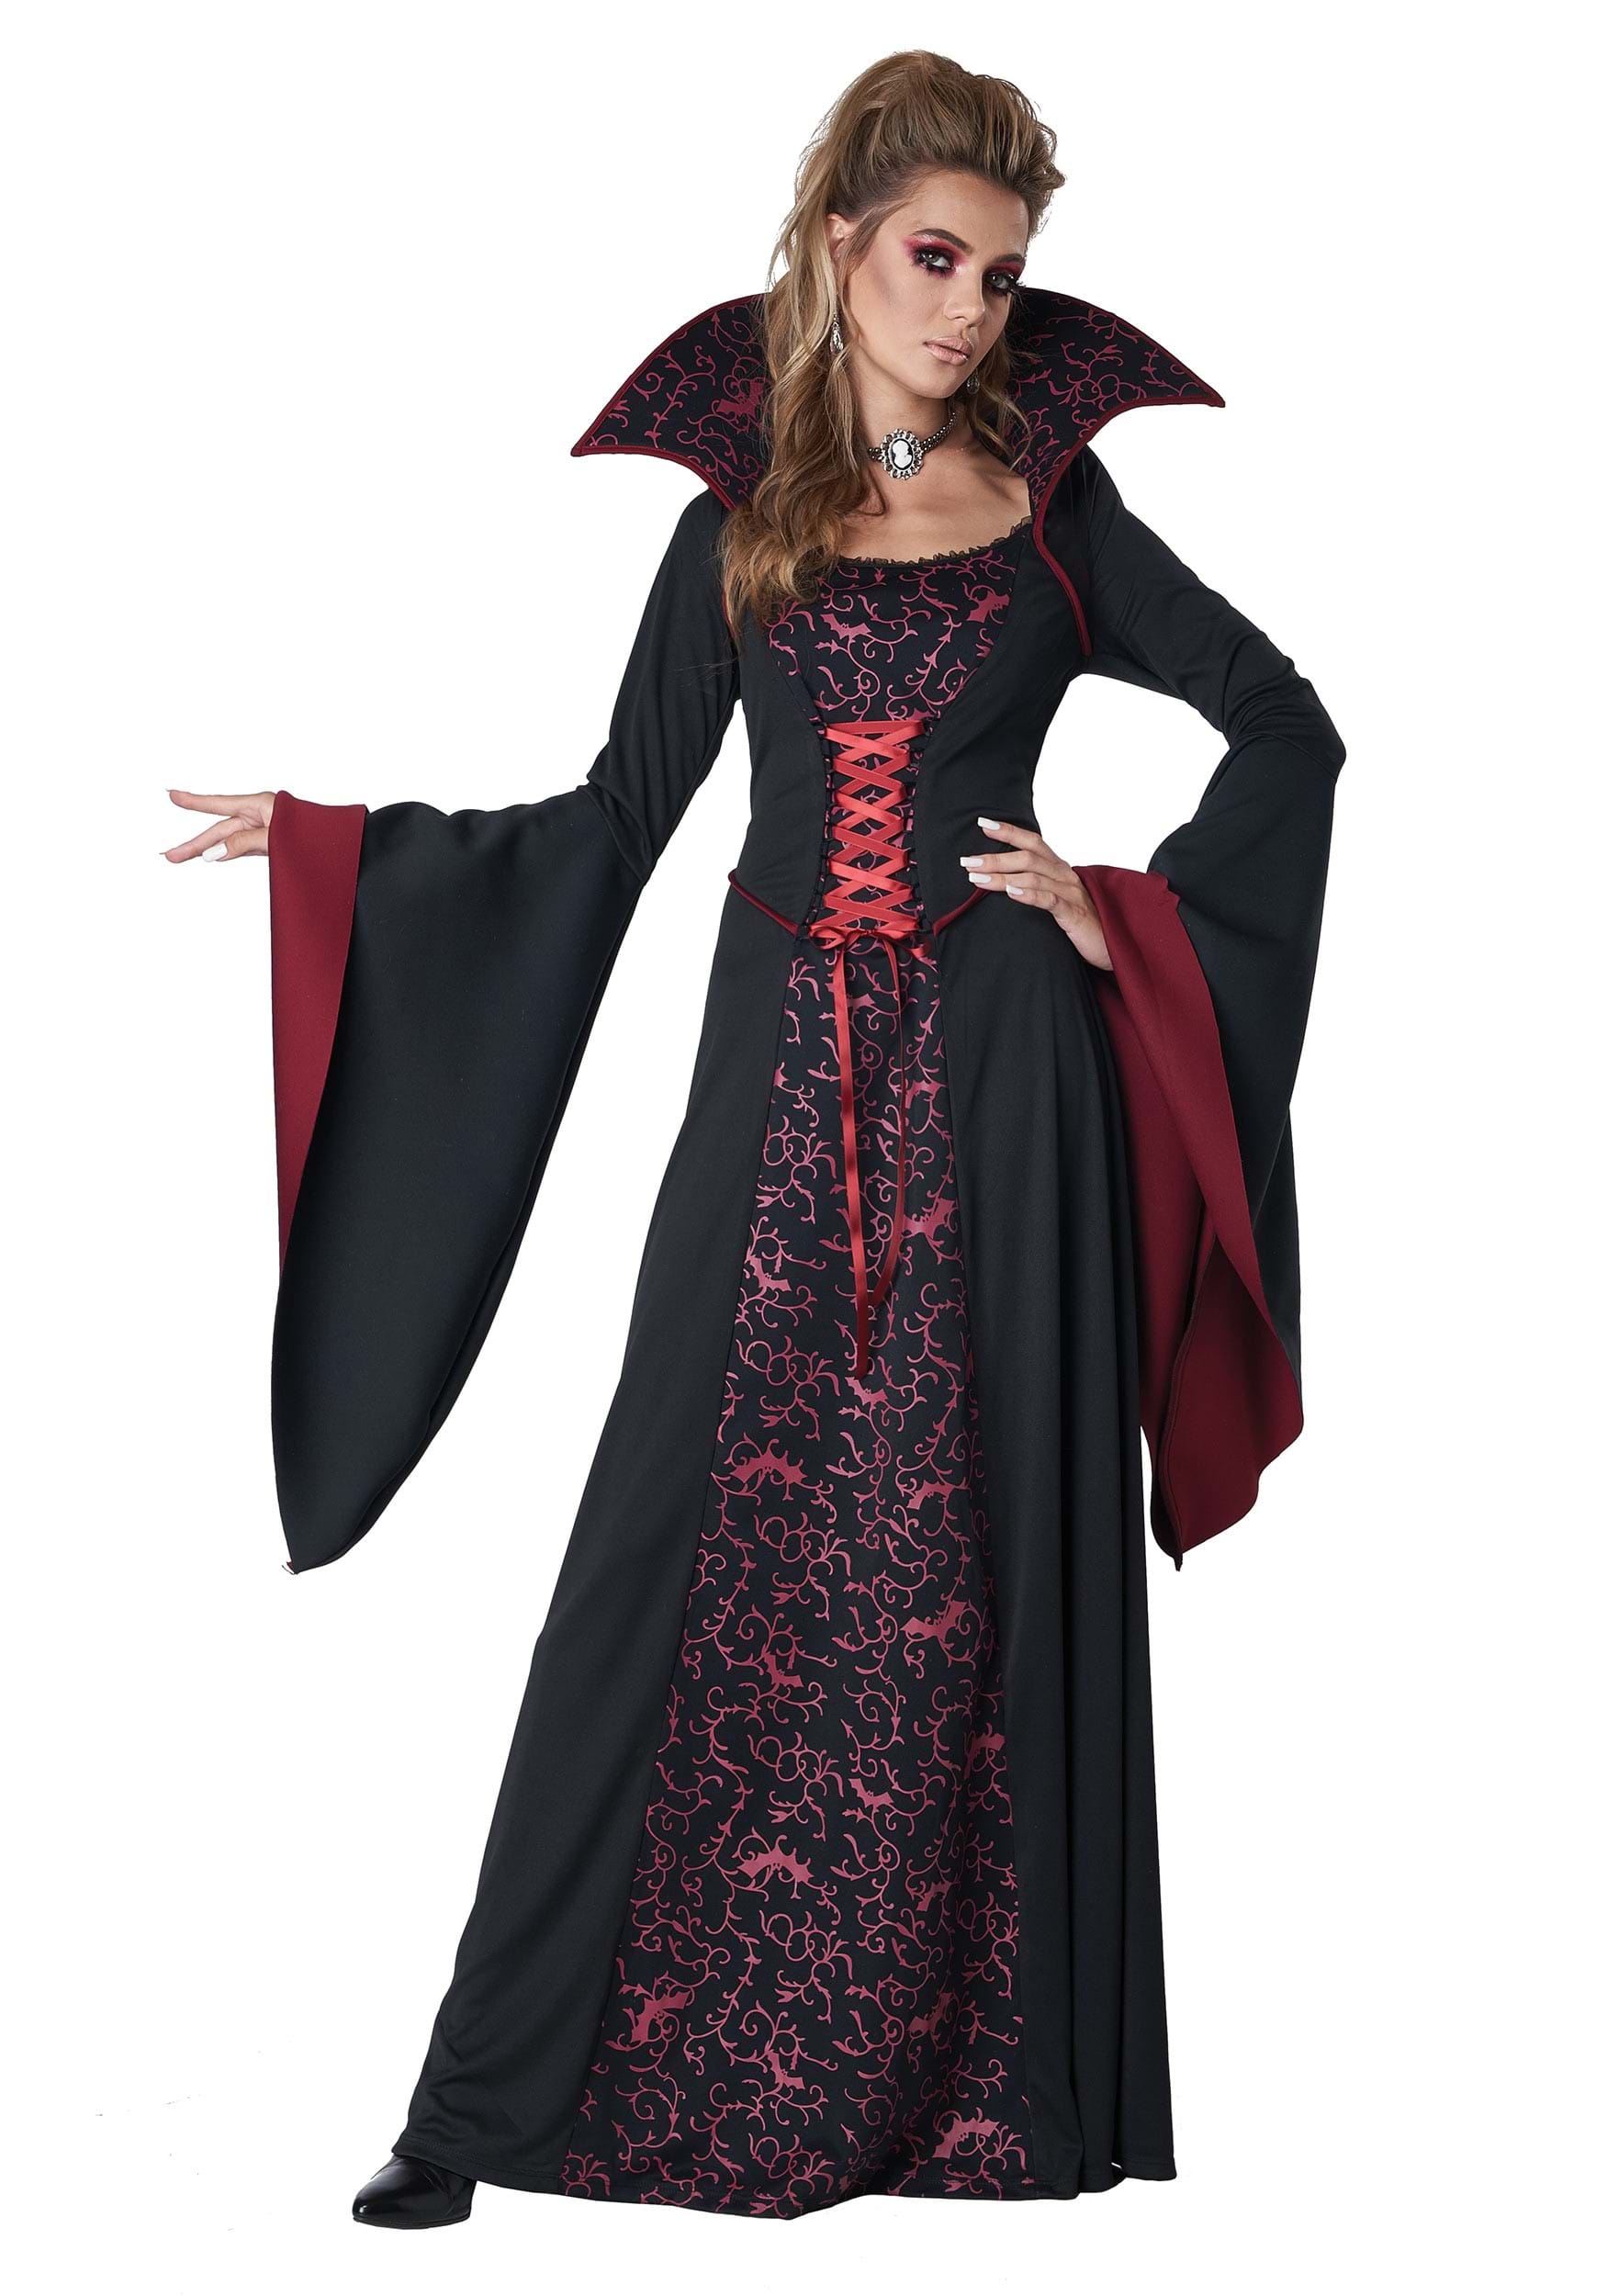 Female Vampire Costume Ideas